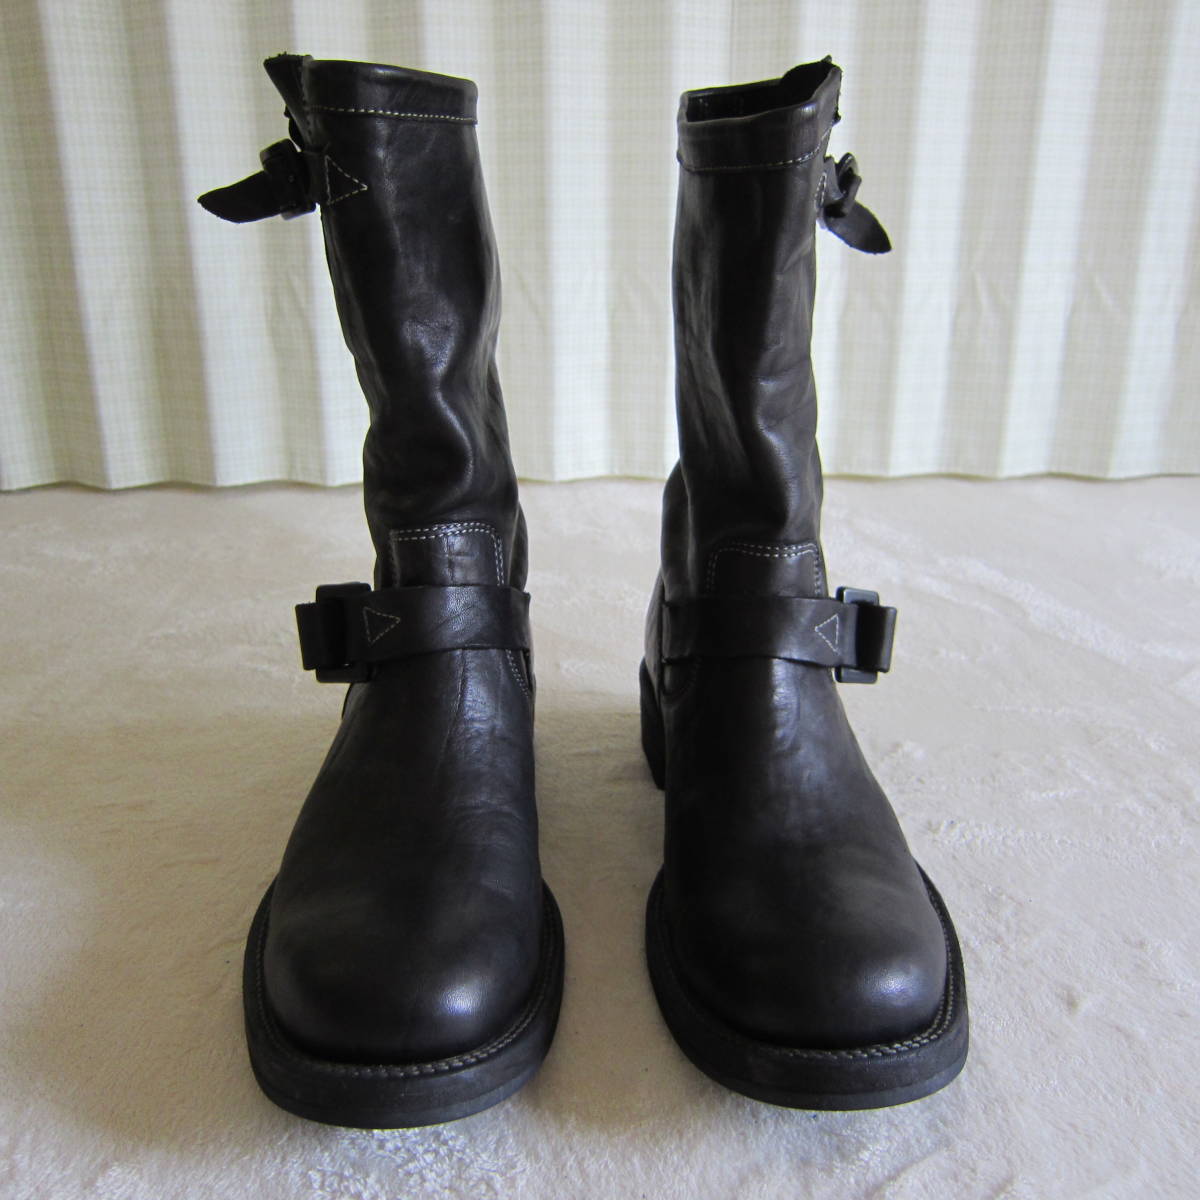 ISAMUKATAYAMA BACKLASHi Sam ka Taya maba crash Japan double shoulder product dyeing engineer boots black size 26cm